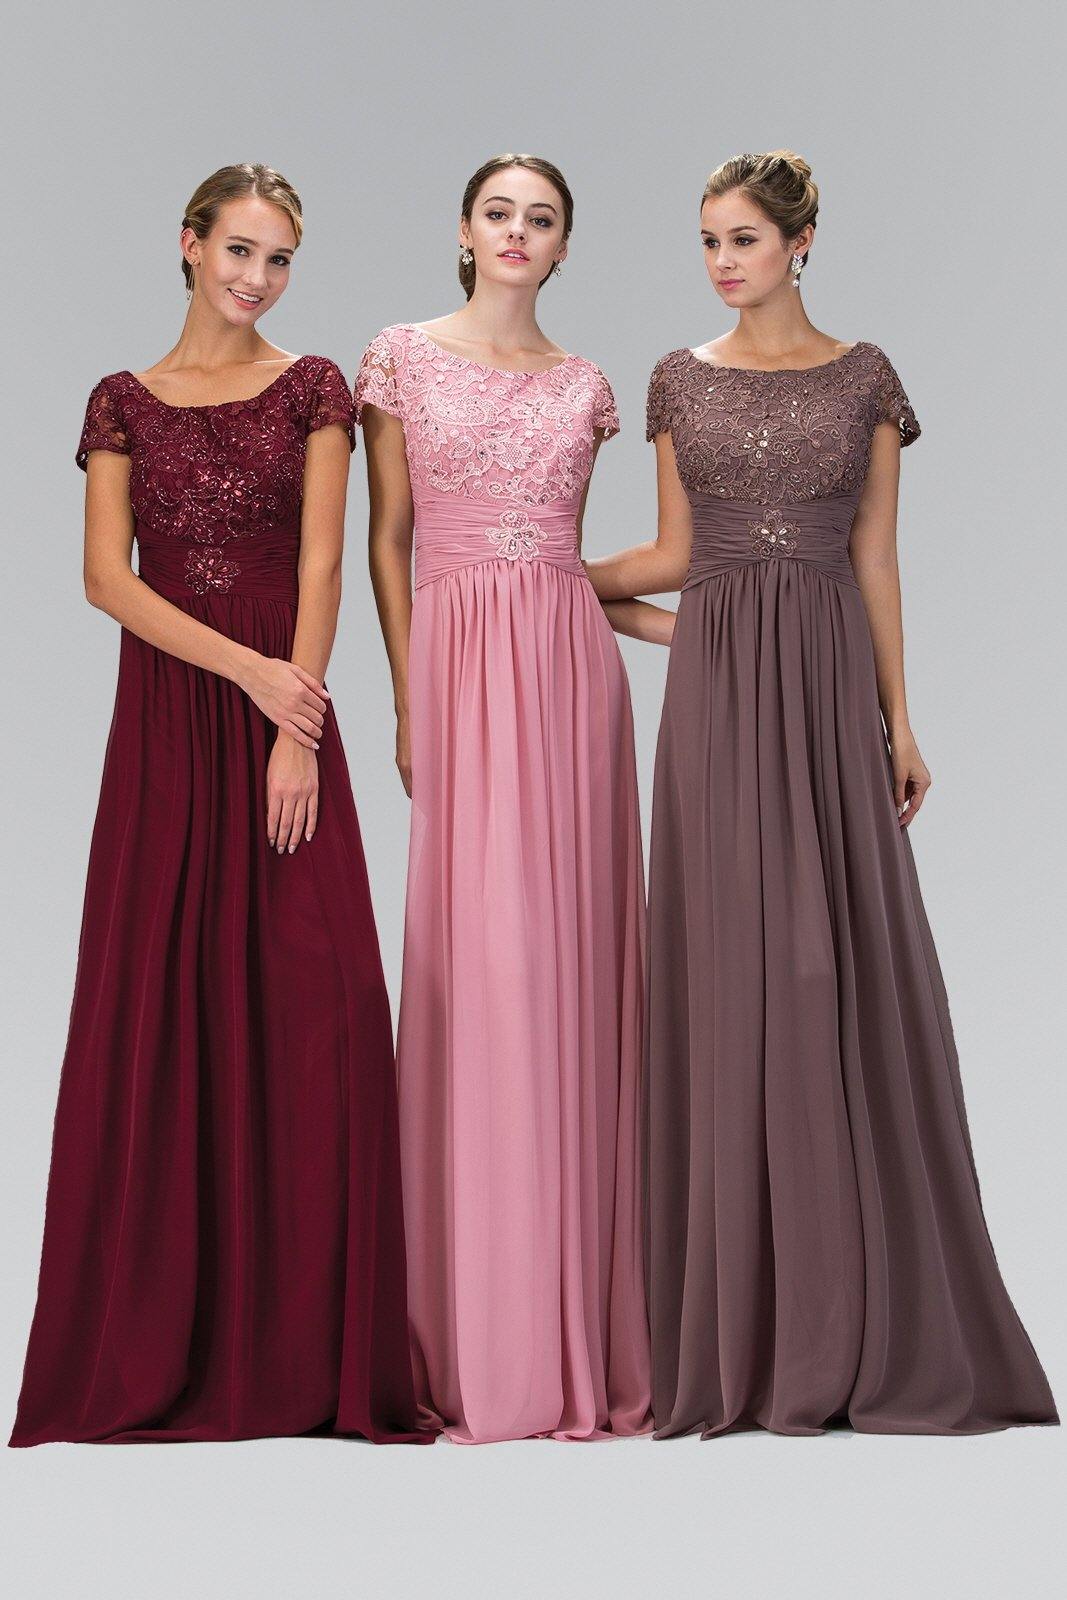 Long Formal Dress A-line - The Dress Outlet Elizabeth K